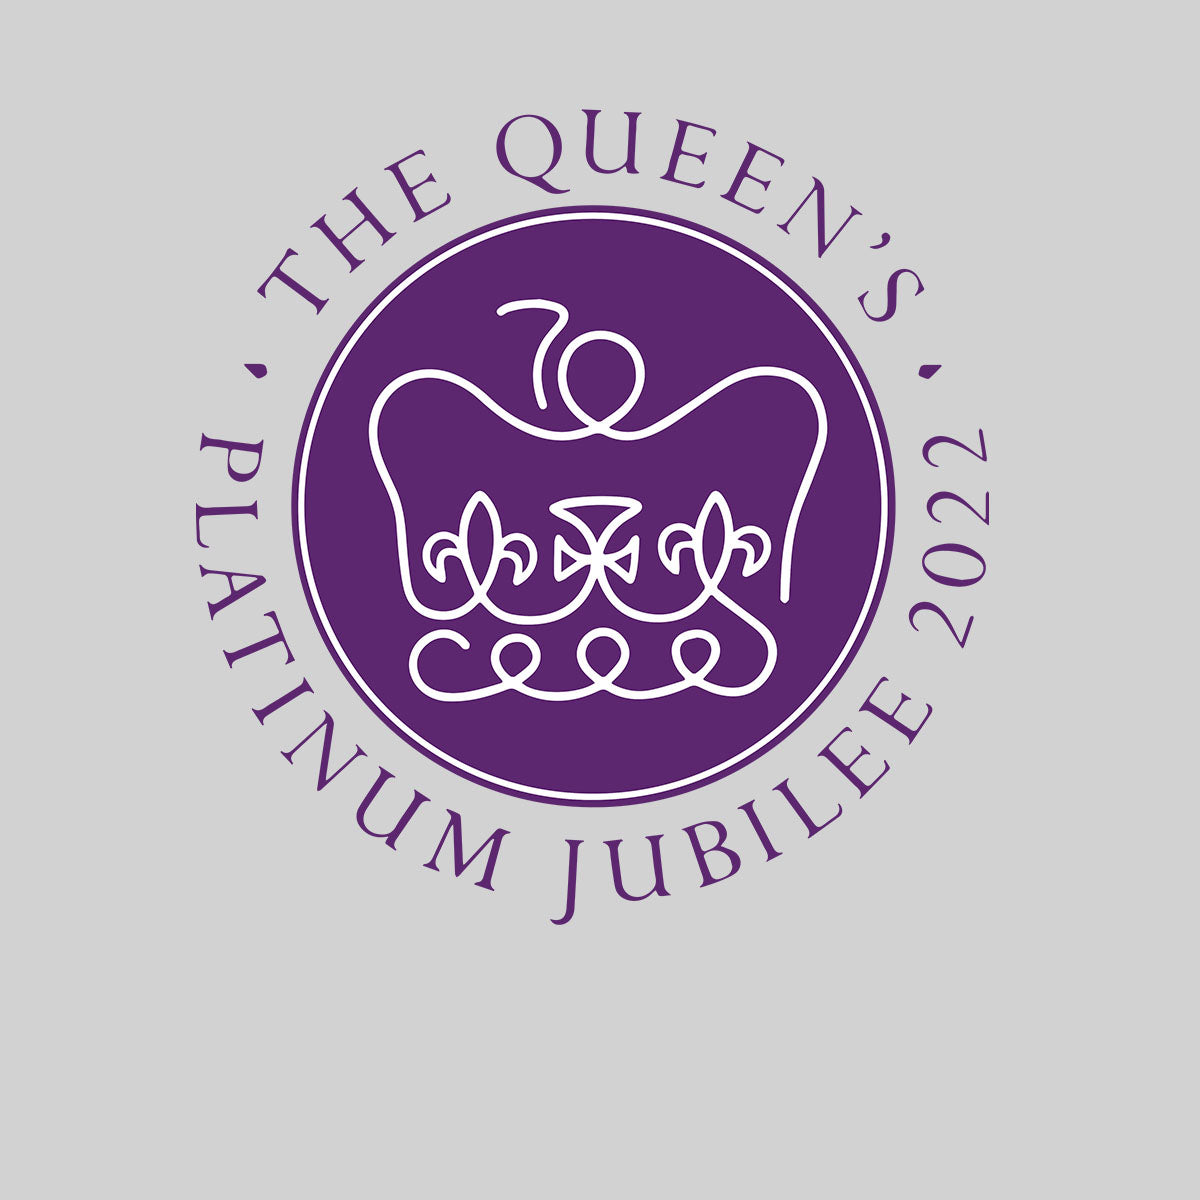 Queen Elizabeth II Platinum Jubilee 2022 Royal Crown T-Shirt - Kuzi Tees